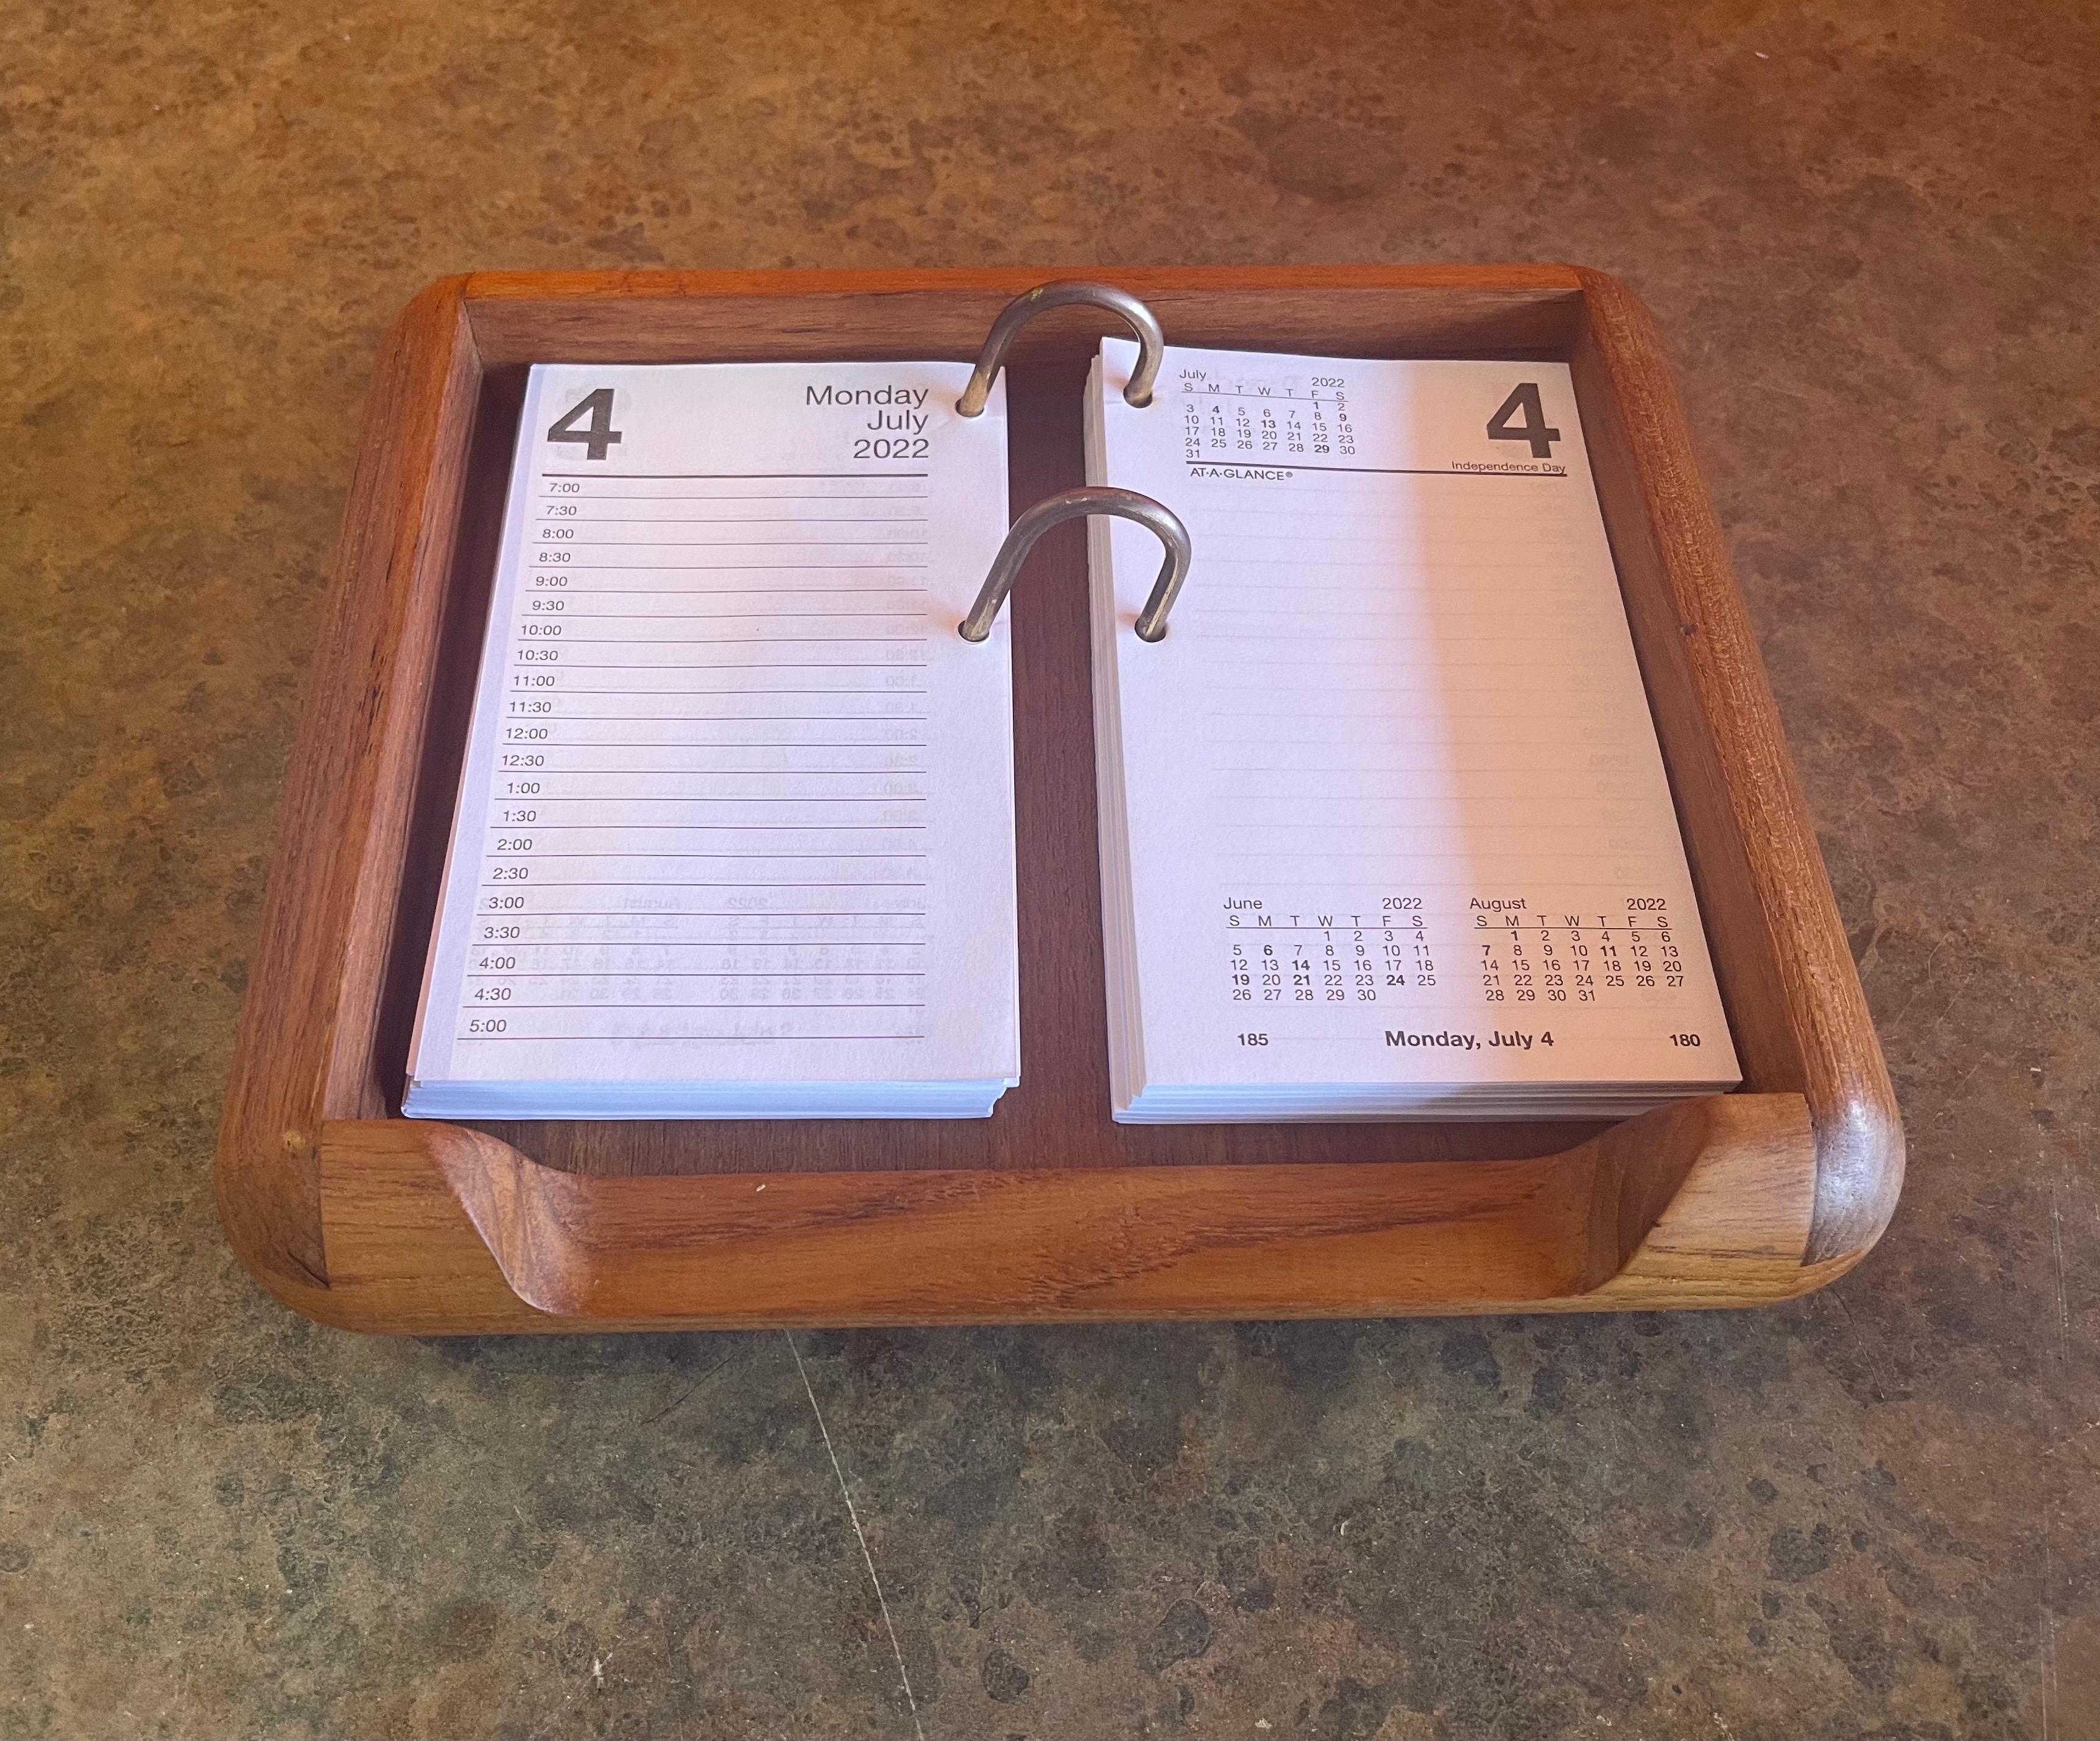 Scrivania moderna danese a fogli mobili con calendario 2022 in teak In condizioni buone in vendita a San Diego, CA